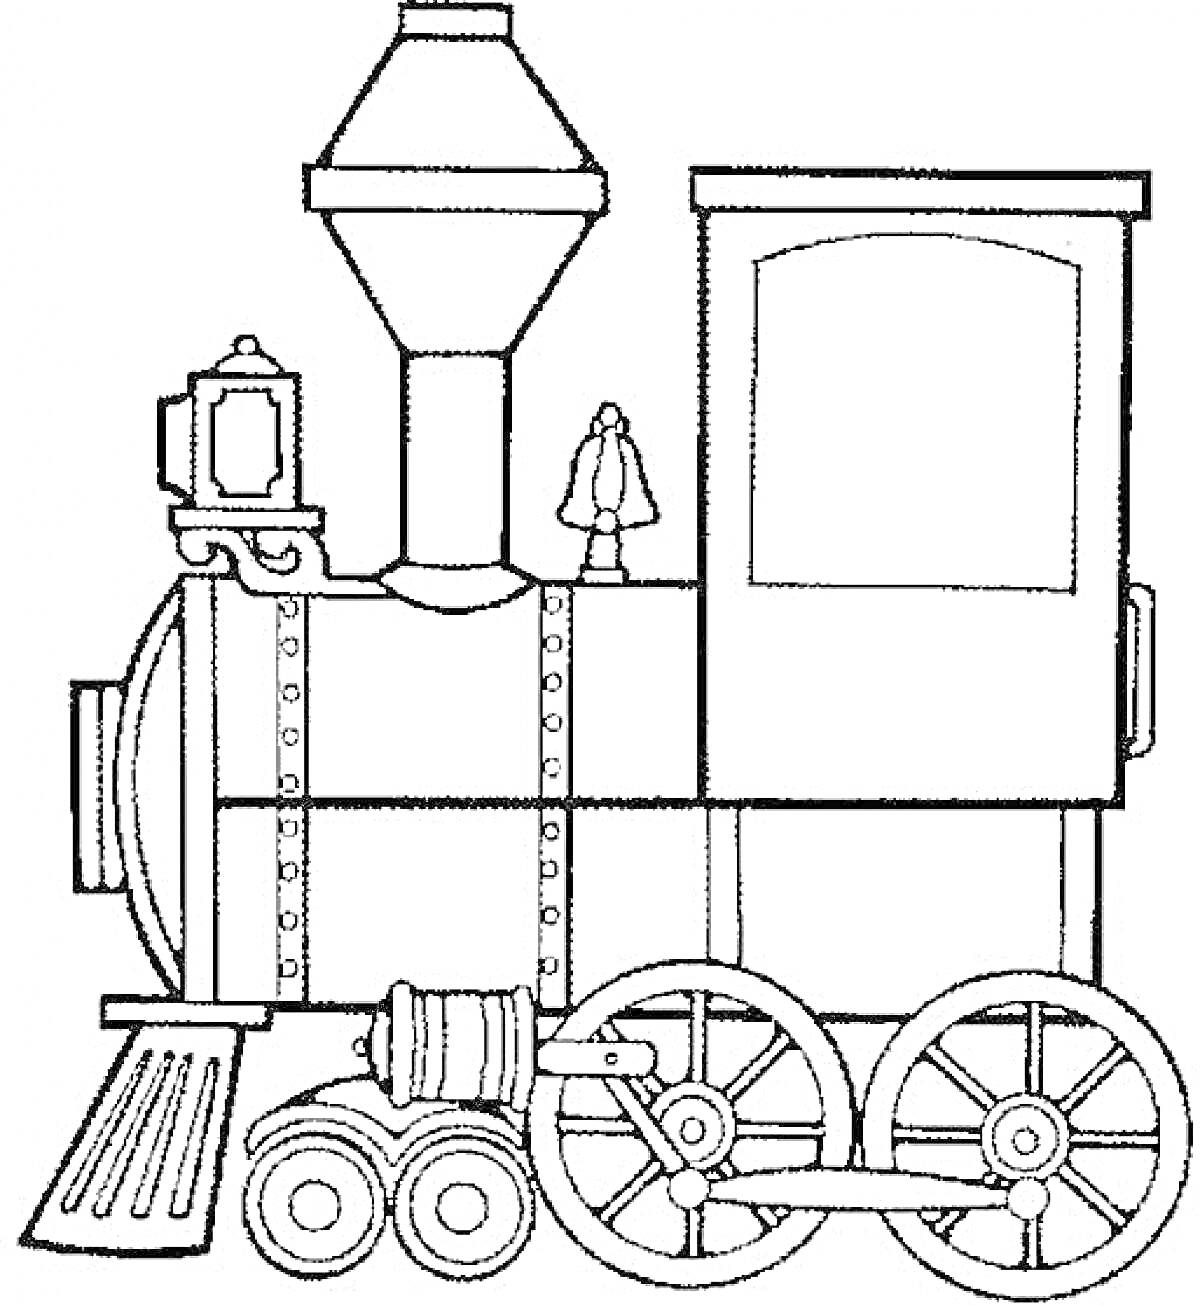 Раскраска Паровоз с трубой, котлом, кабиной машиниста, колесами и фонарем